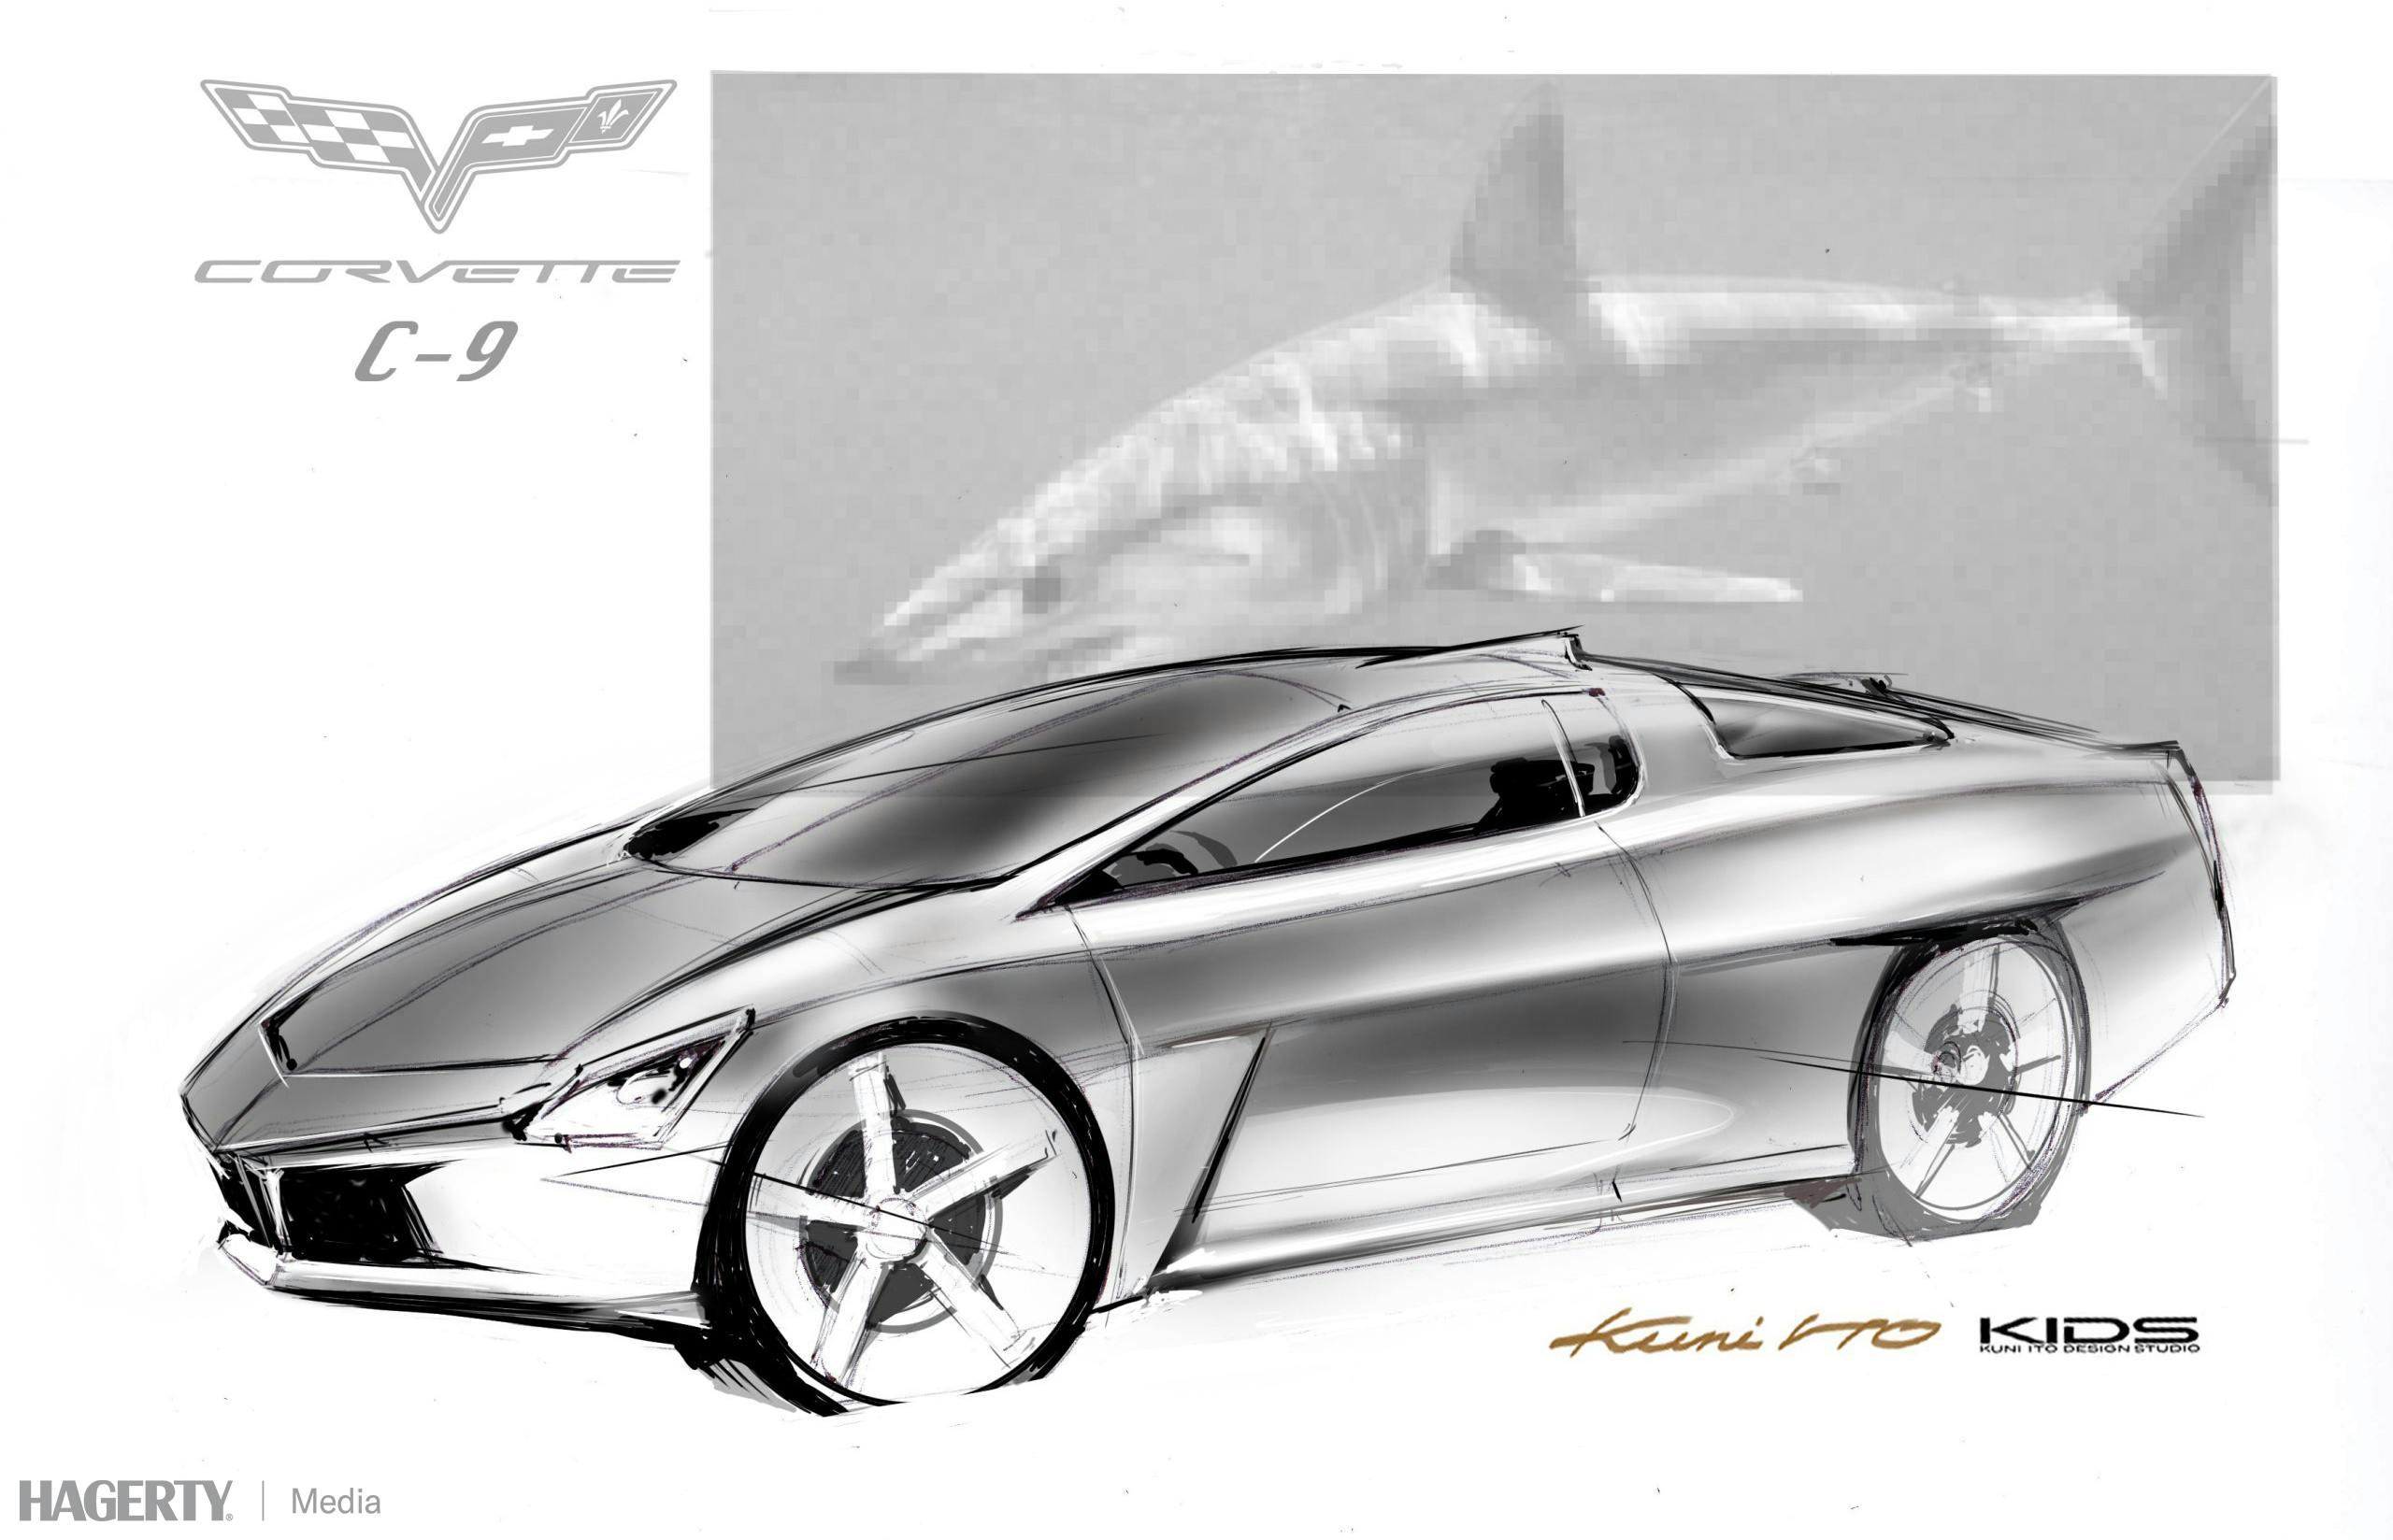 Kuni Ito C9 corvette design sketch